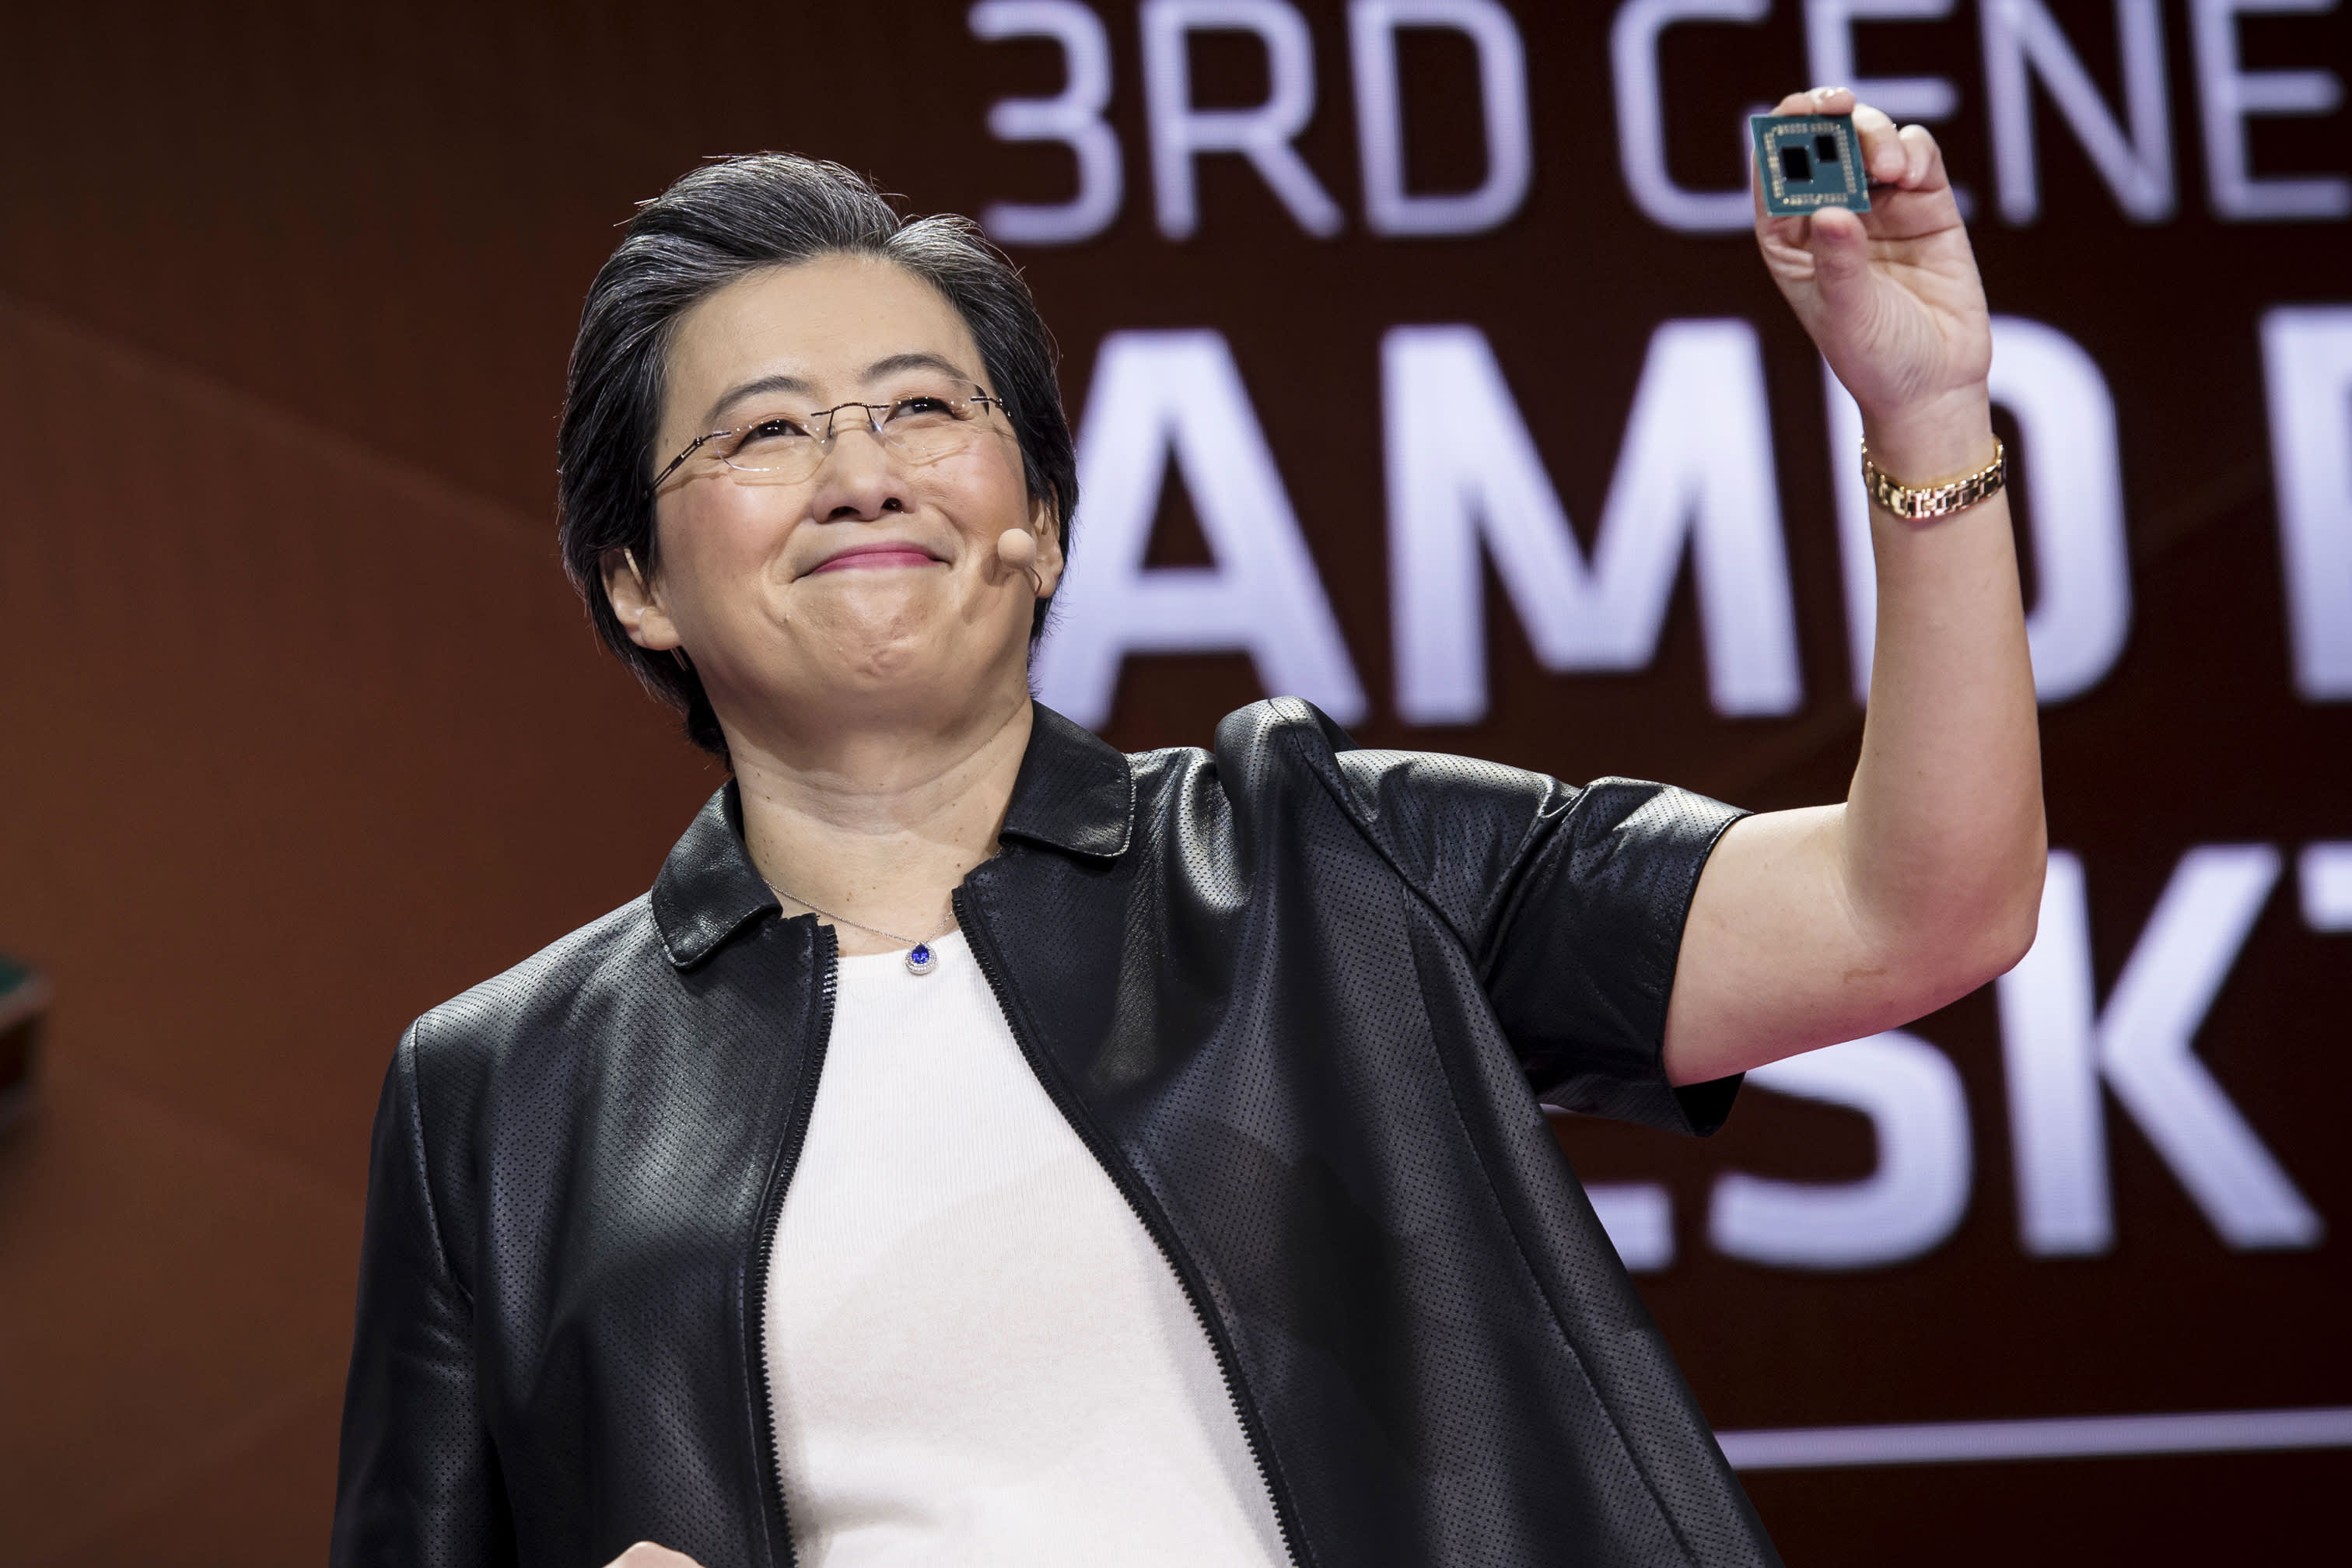 AMD (AMD) earnings in Q4 2020